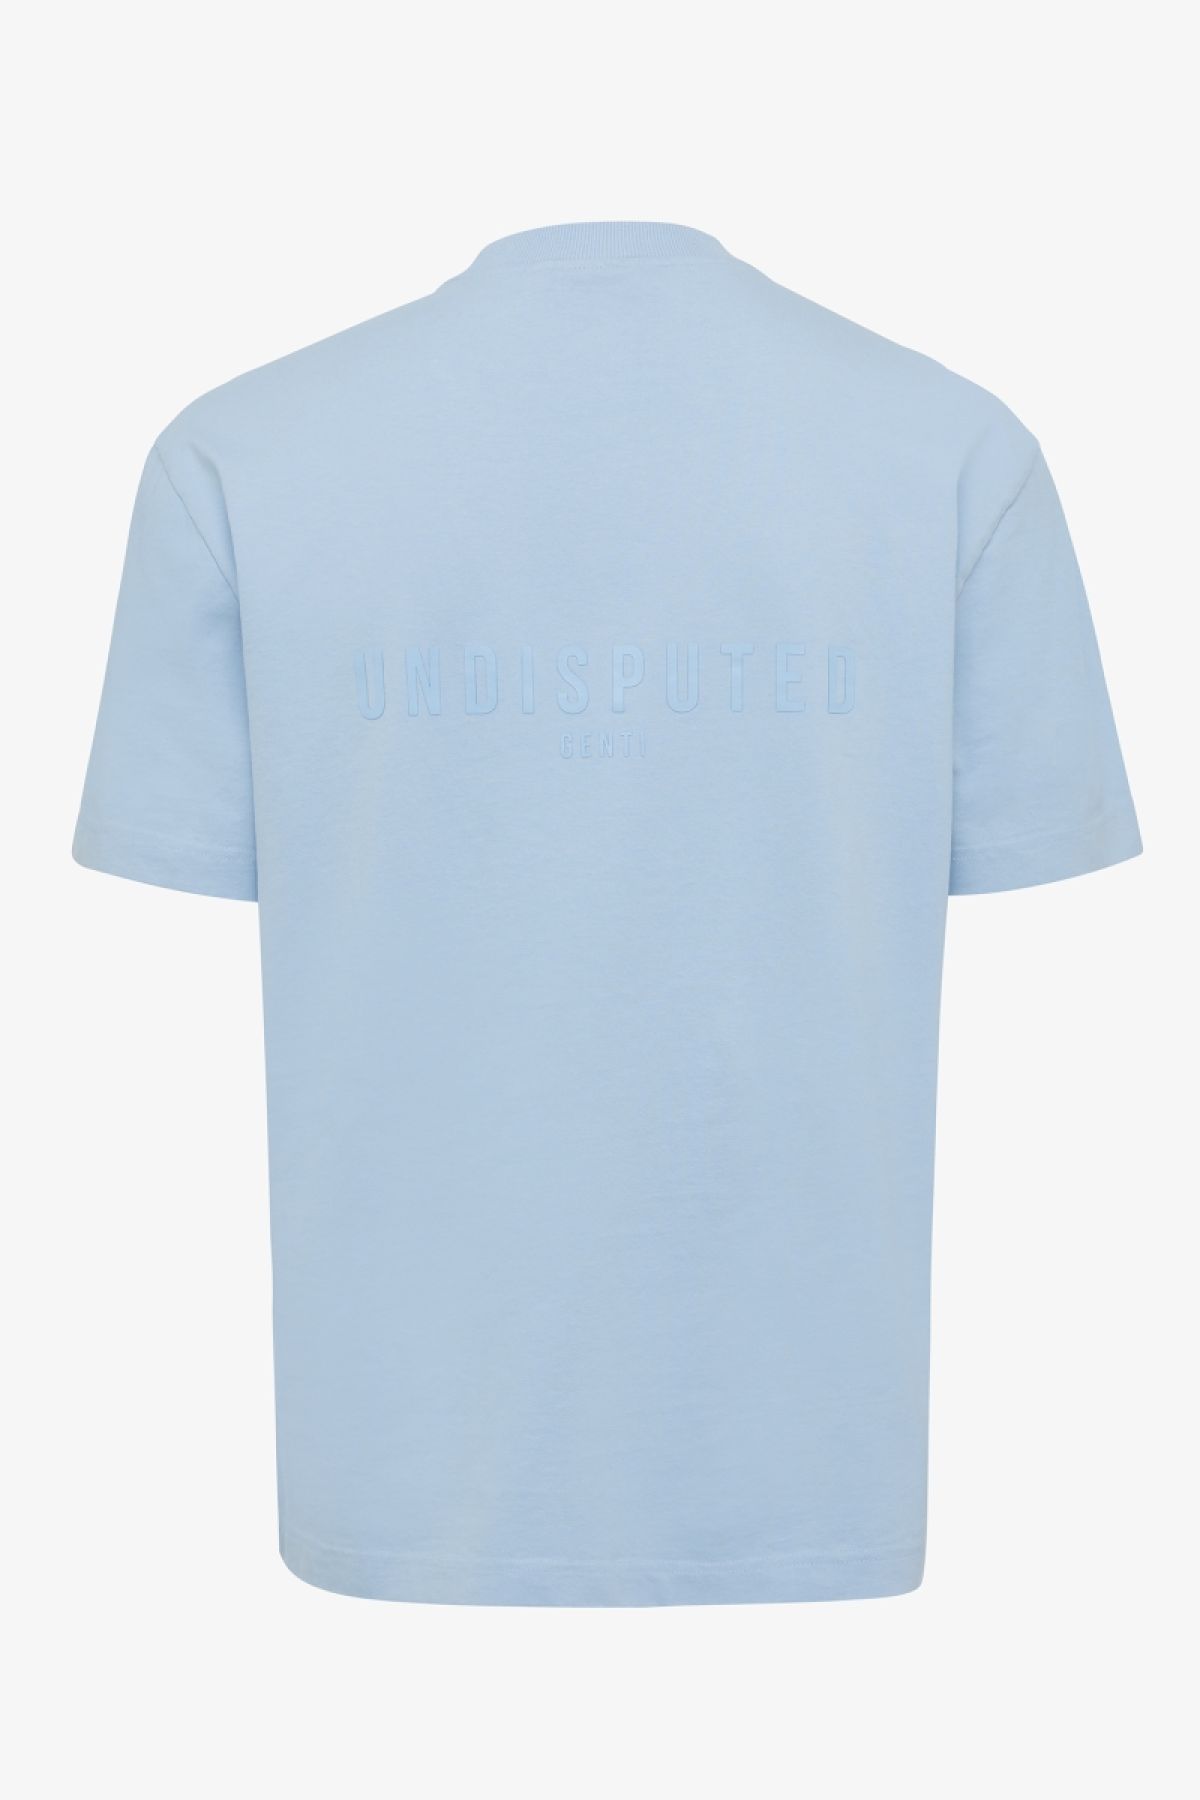 T-shirt zip lichtblauw